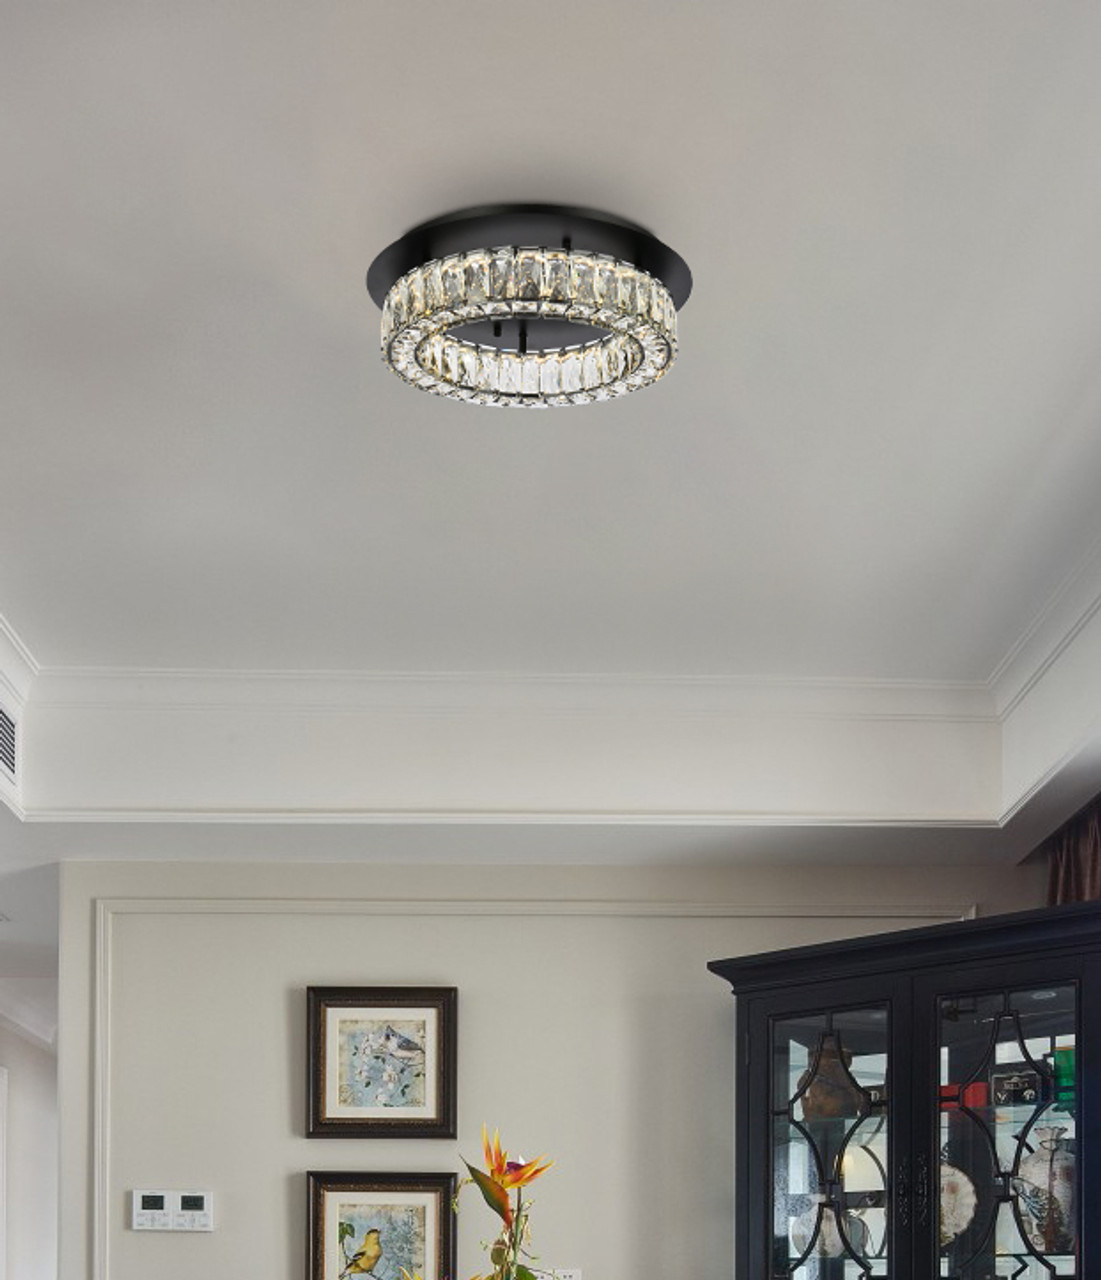 Elegant Lighting 3503F18BK Monroe 18 inch LED Single flush mount in black